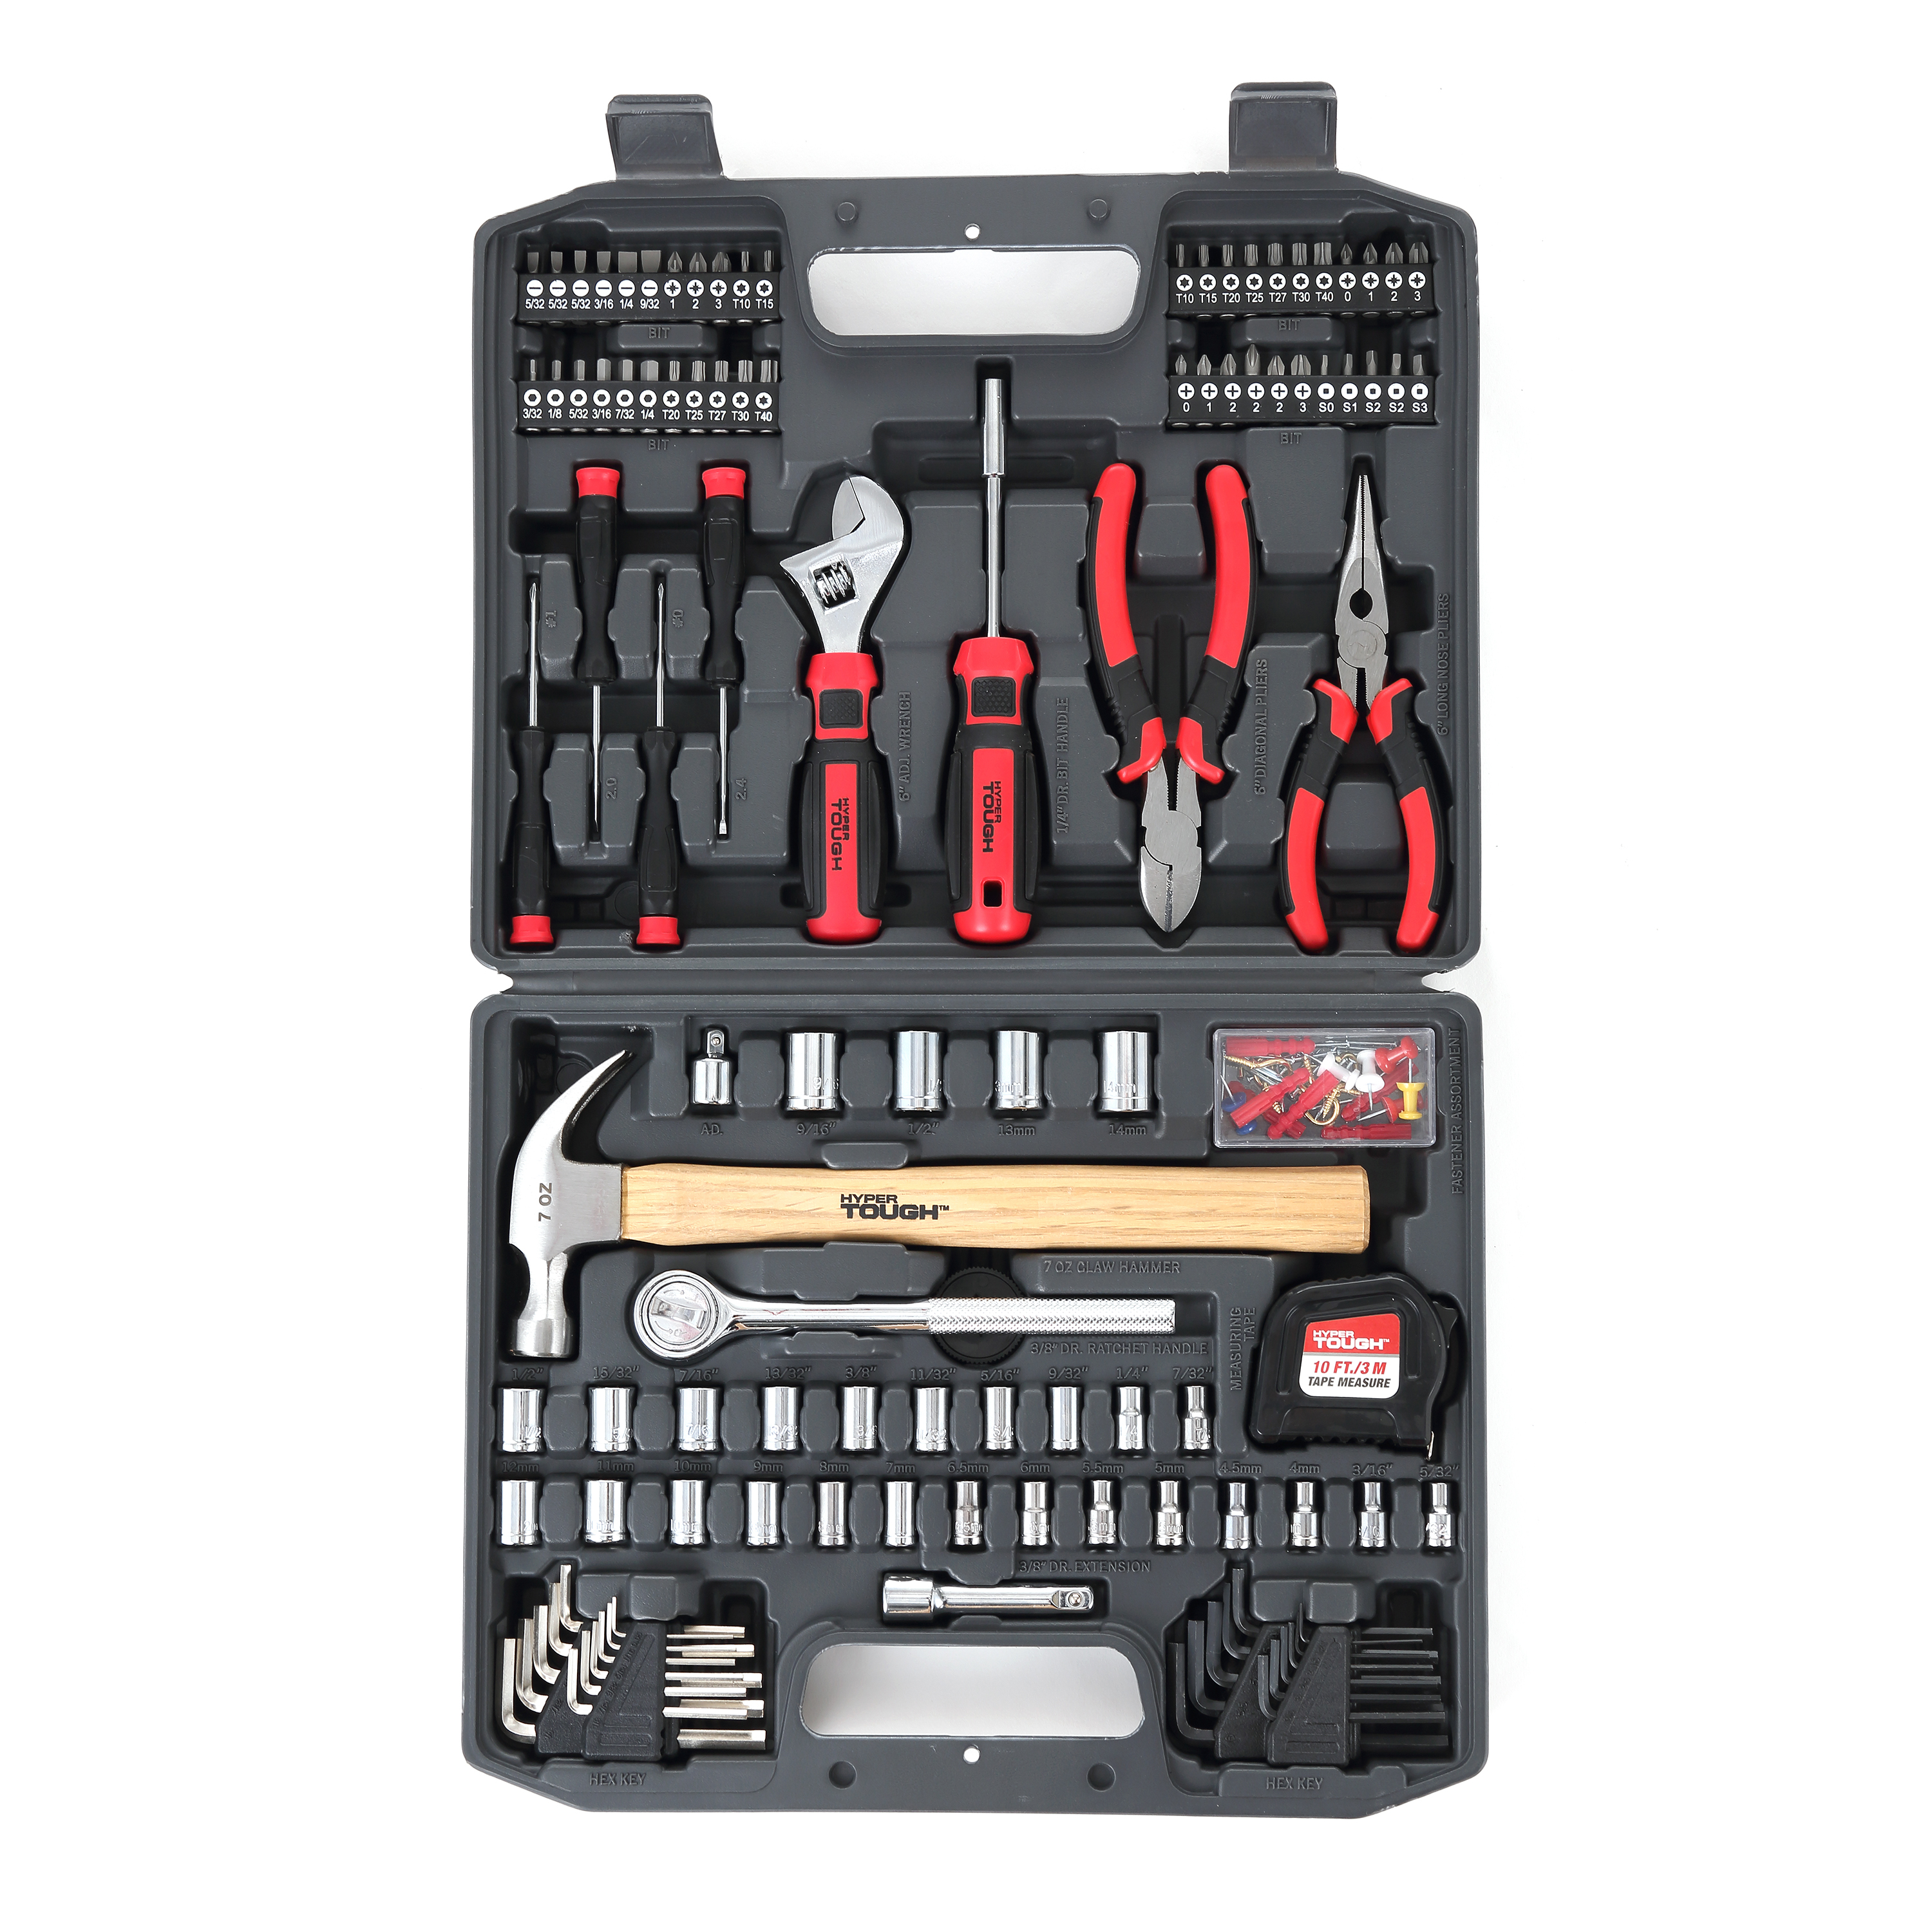 Hyper Tough 116 Piece Home Repair Tool Set Including Carry Case UJ5387TA - image 1 of 10